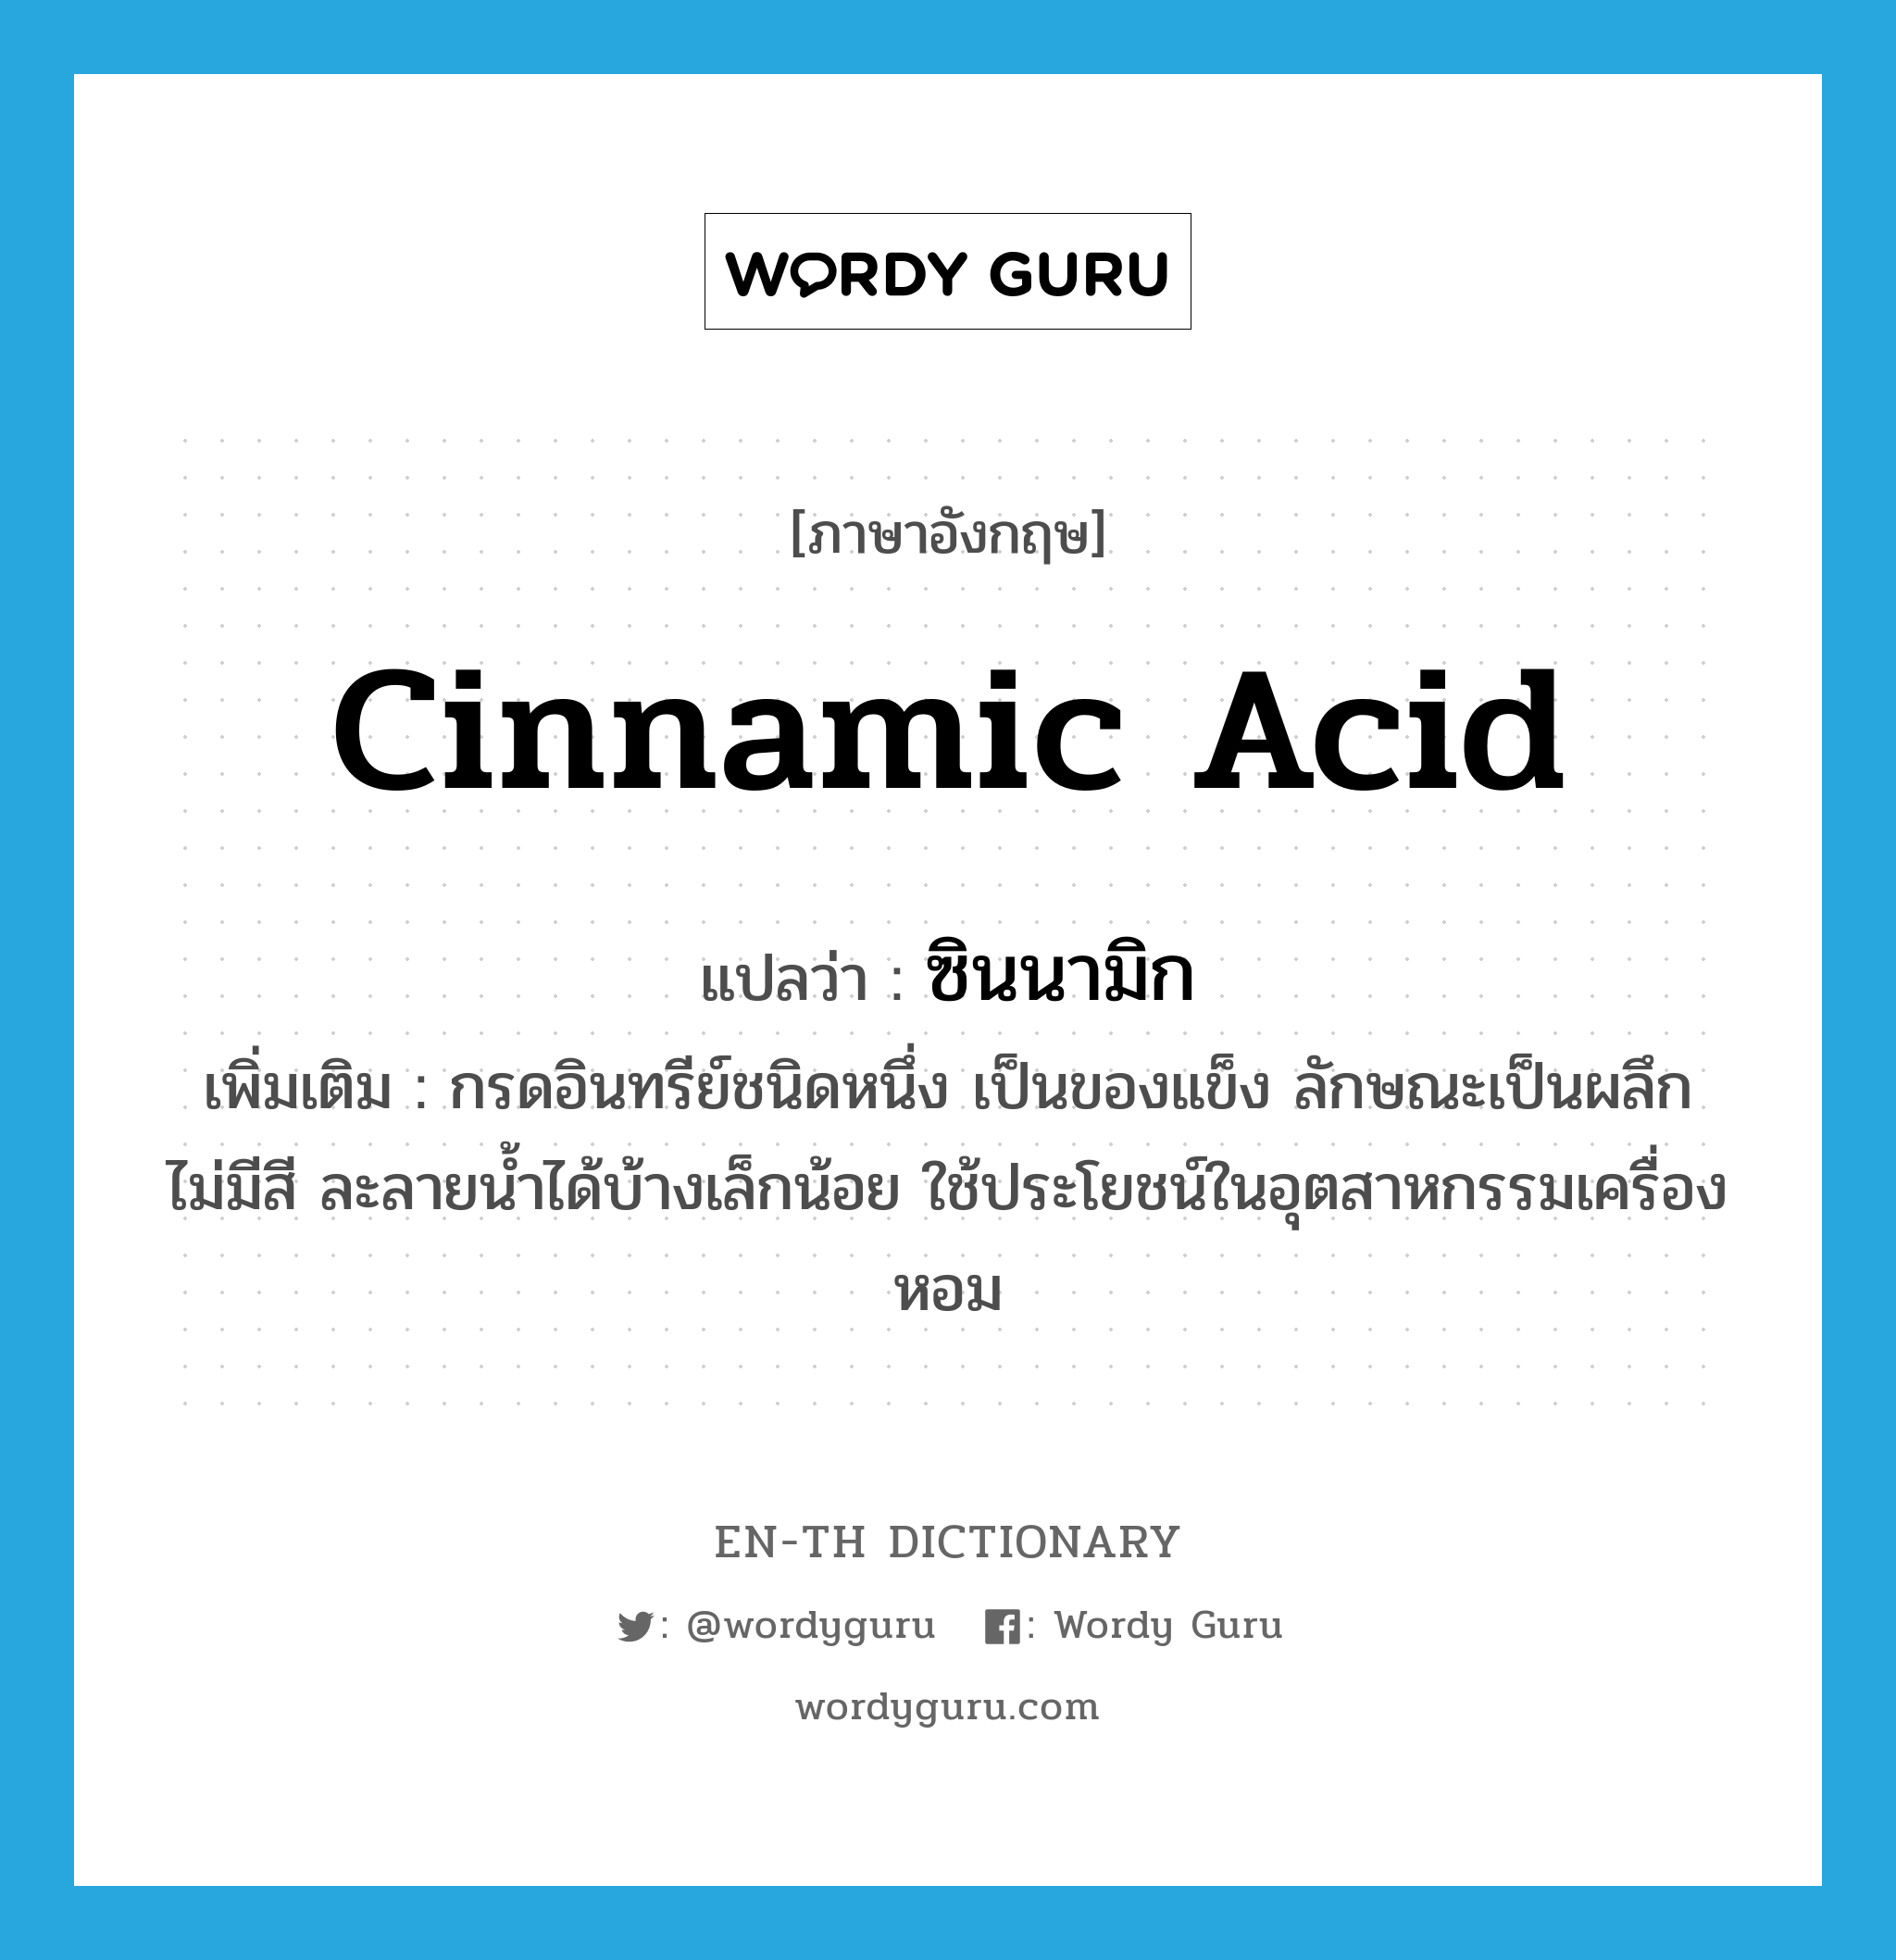 cinnamic acid แปลว่า?, คำศัพท์ภาษาอังกฤษ cinnamic acid แปลว่า ซินนามิก ประเภท N เพิ่มเติม กรดอินทรีย์ชนิดหนึ่ง เป็นของแข็ง ลักษณะเป็นผลึก ไม่มีสี ละลายน้ำได้บ้างเล็กน้อย ใช้ประโยชน์ในอุตสาหกรรมเครื่องหอม หมวด N